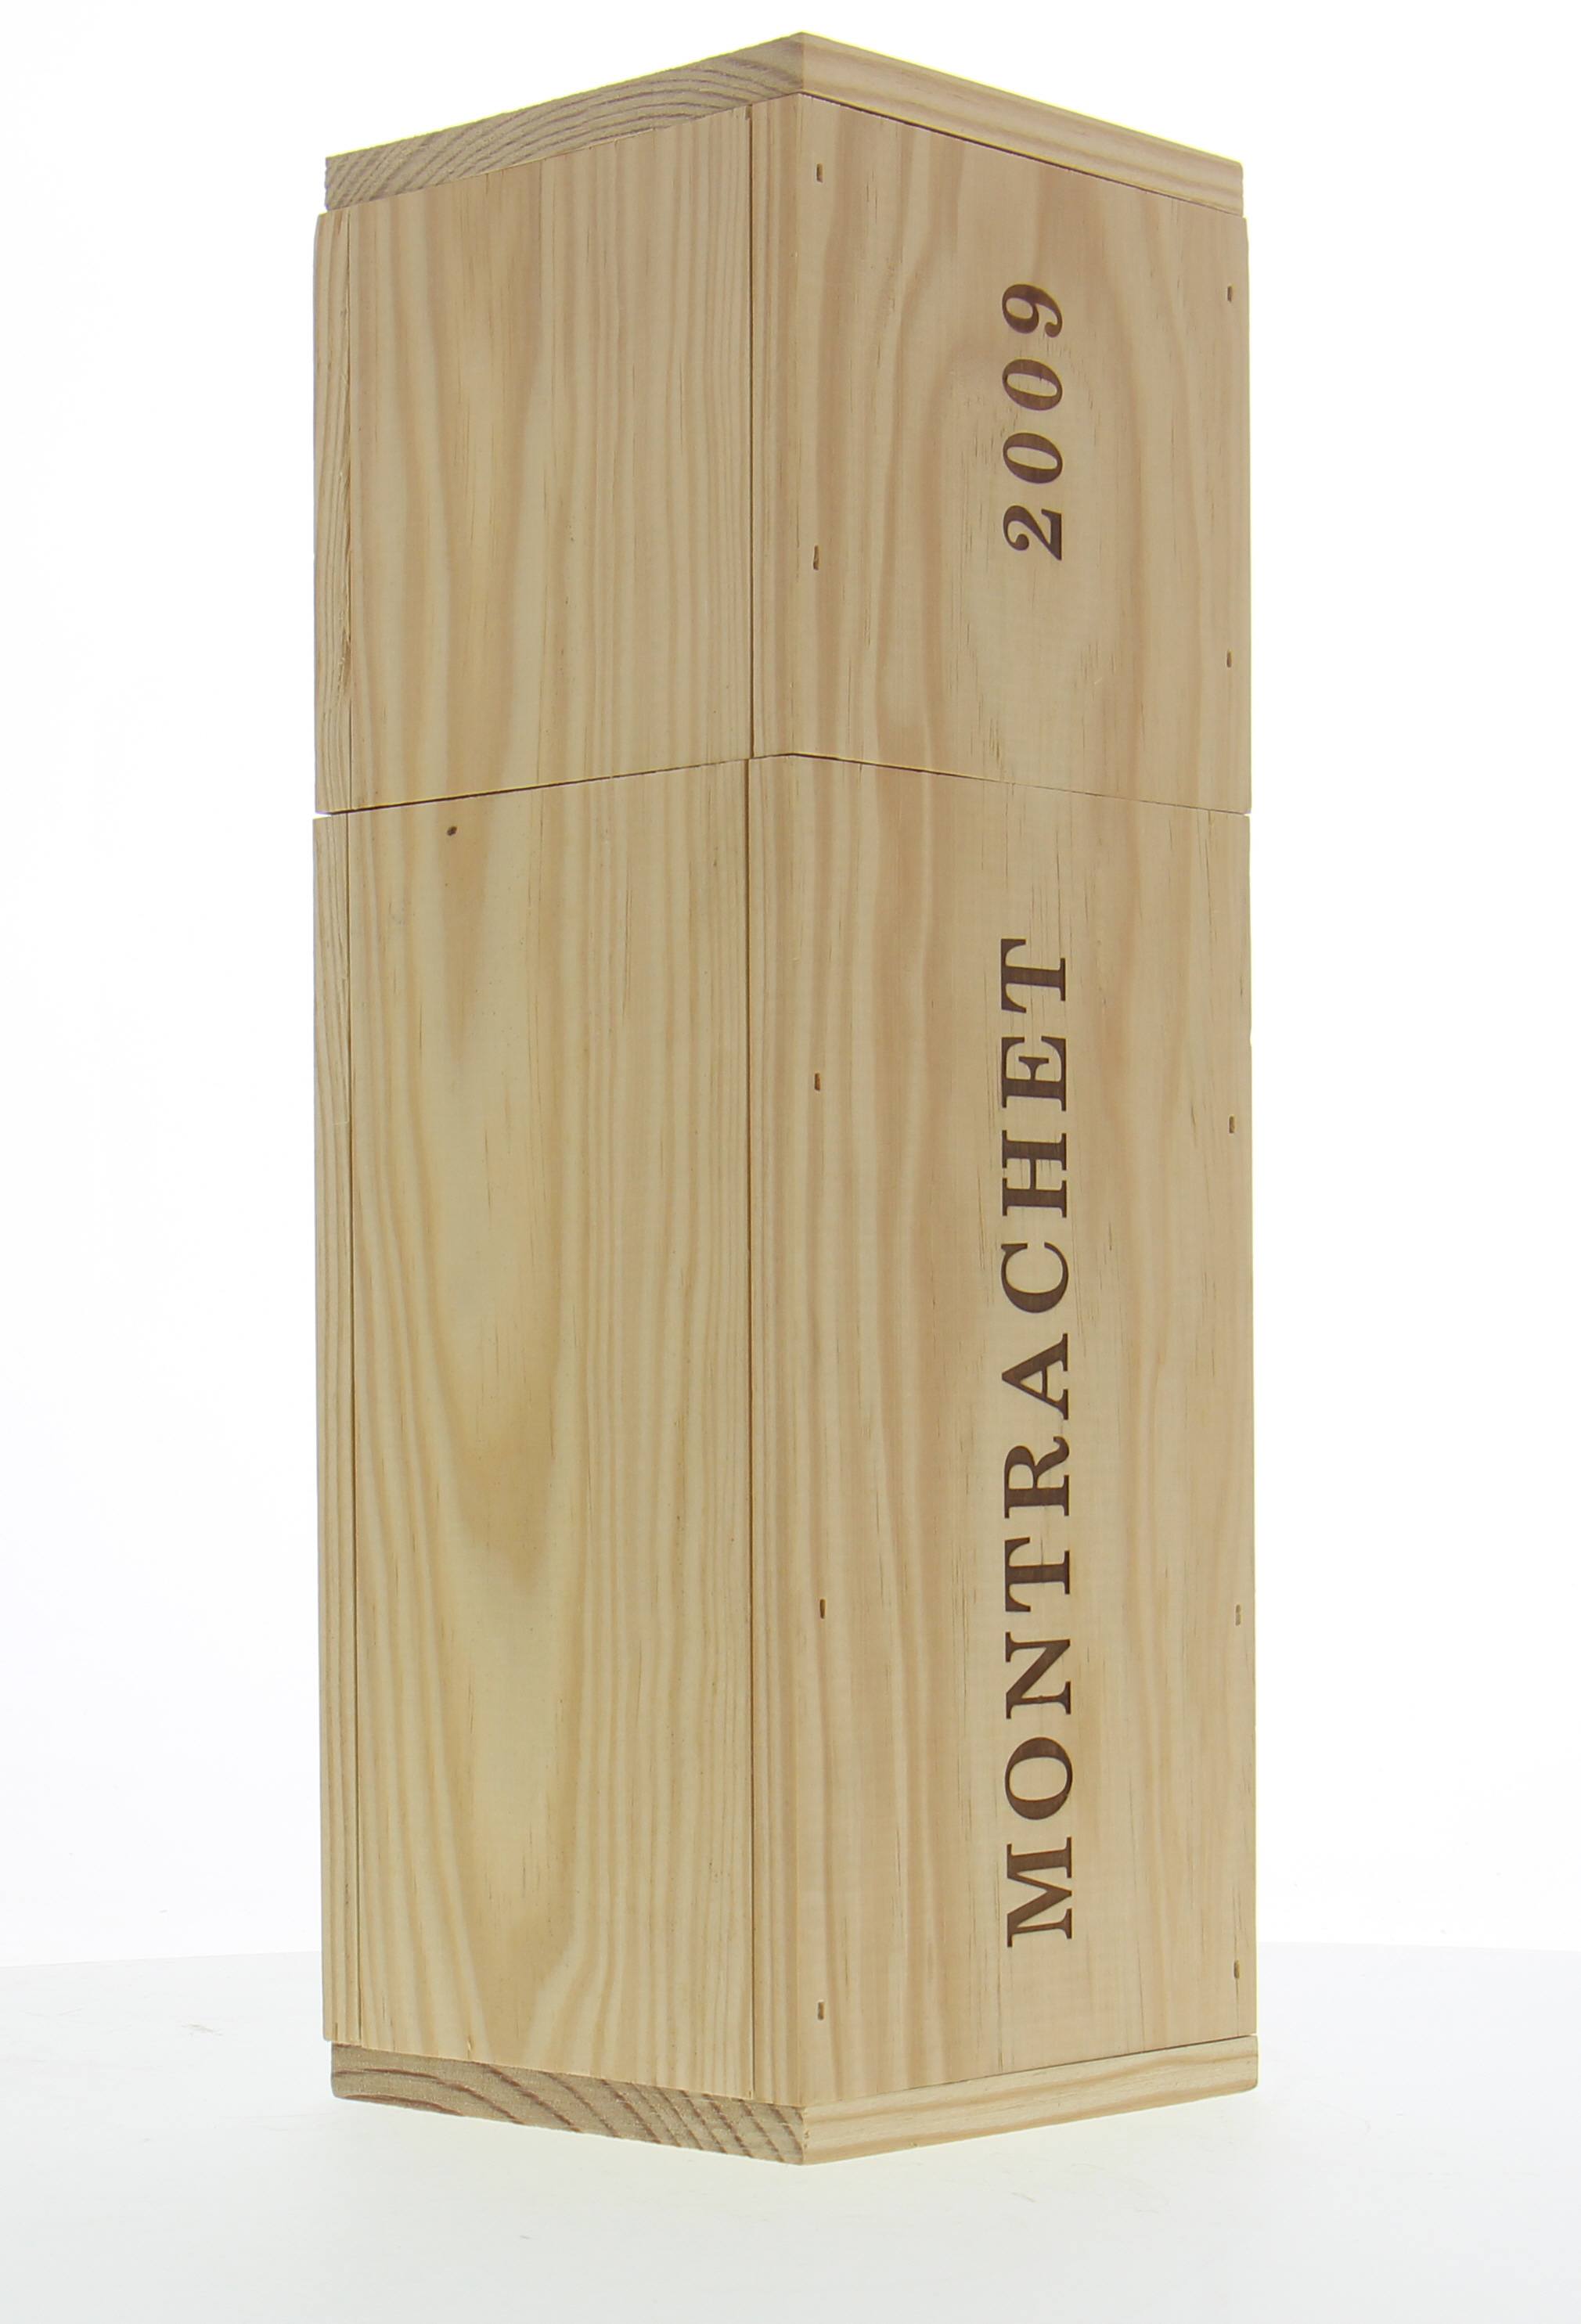 Domaines des Comtes Lafon - Le Montrachet 2009 From Original Wooden Case